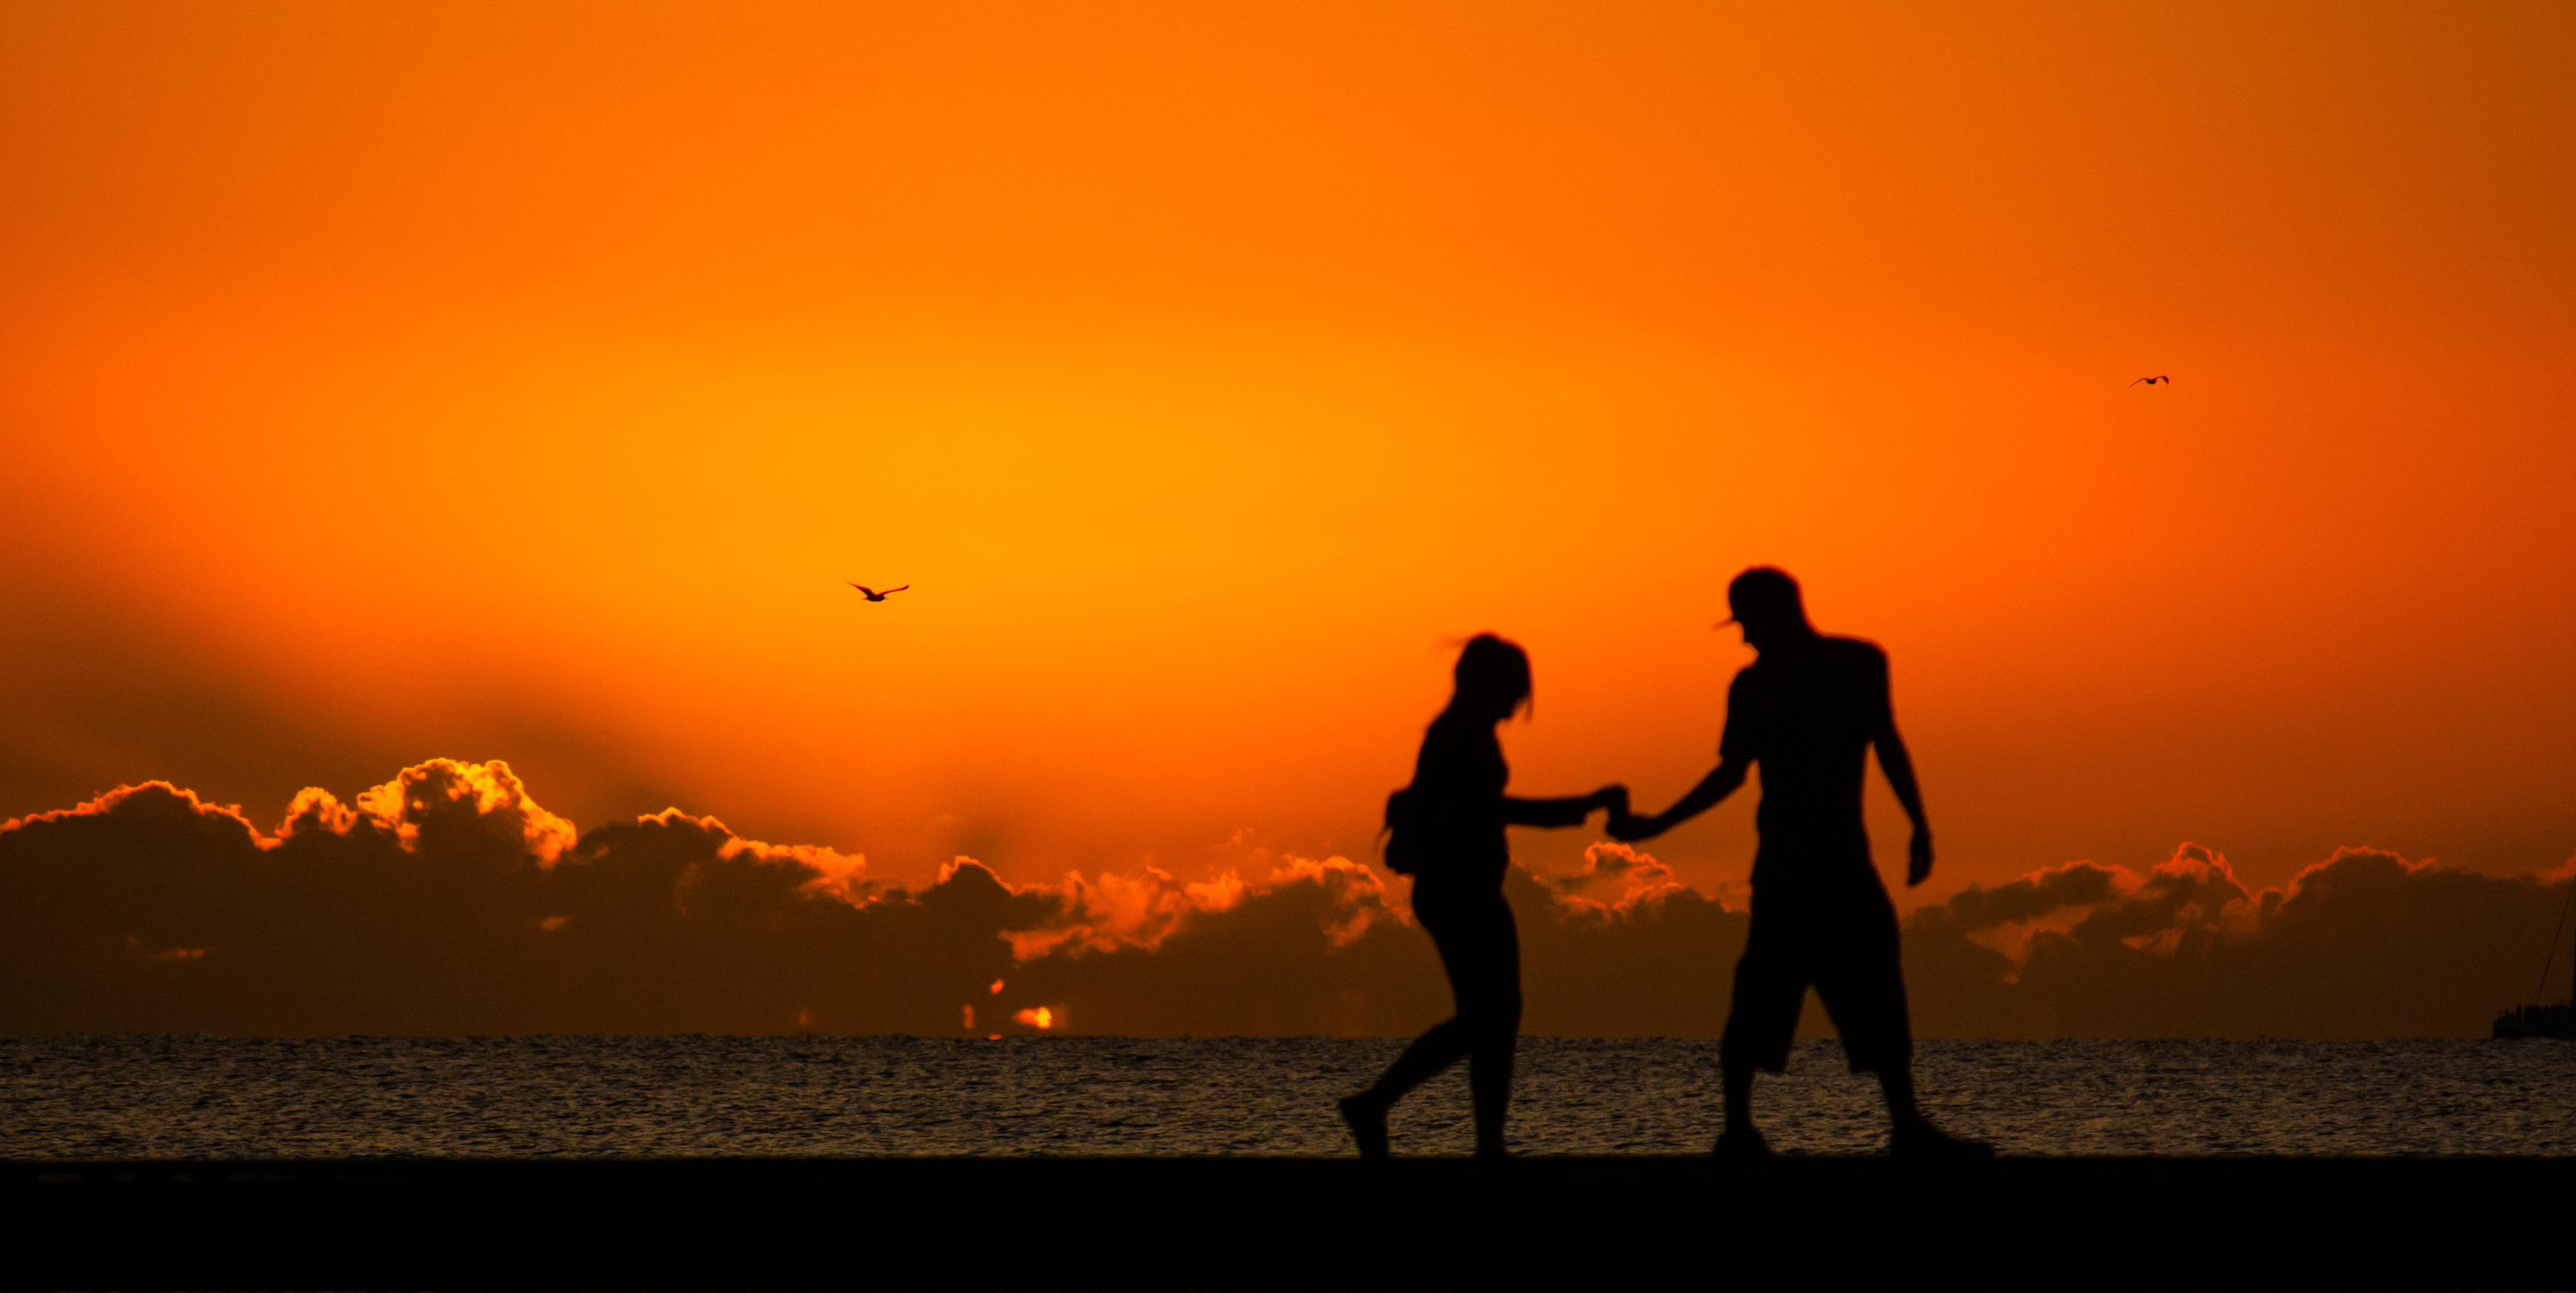 Couple on beach, sunset, p: 3481x1747